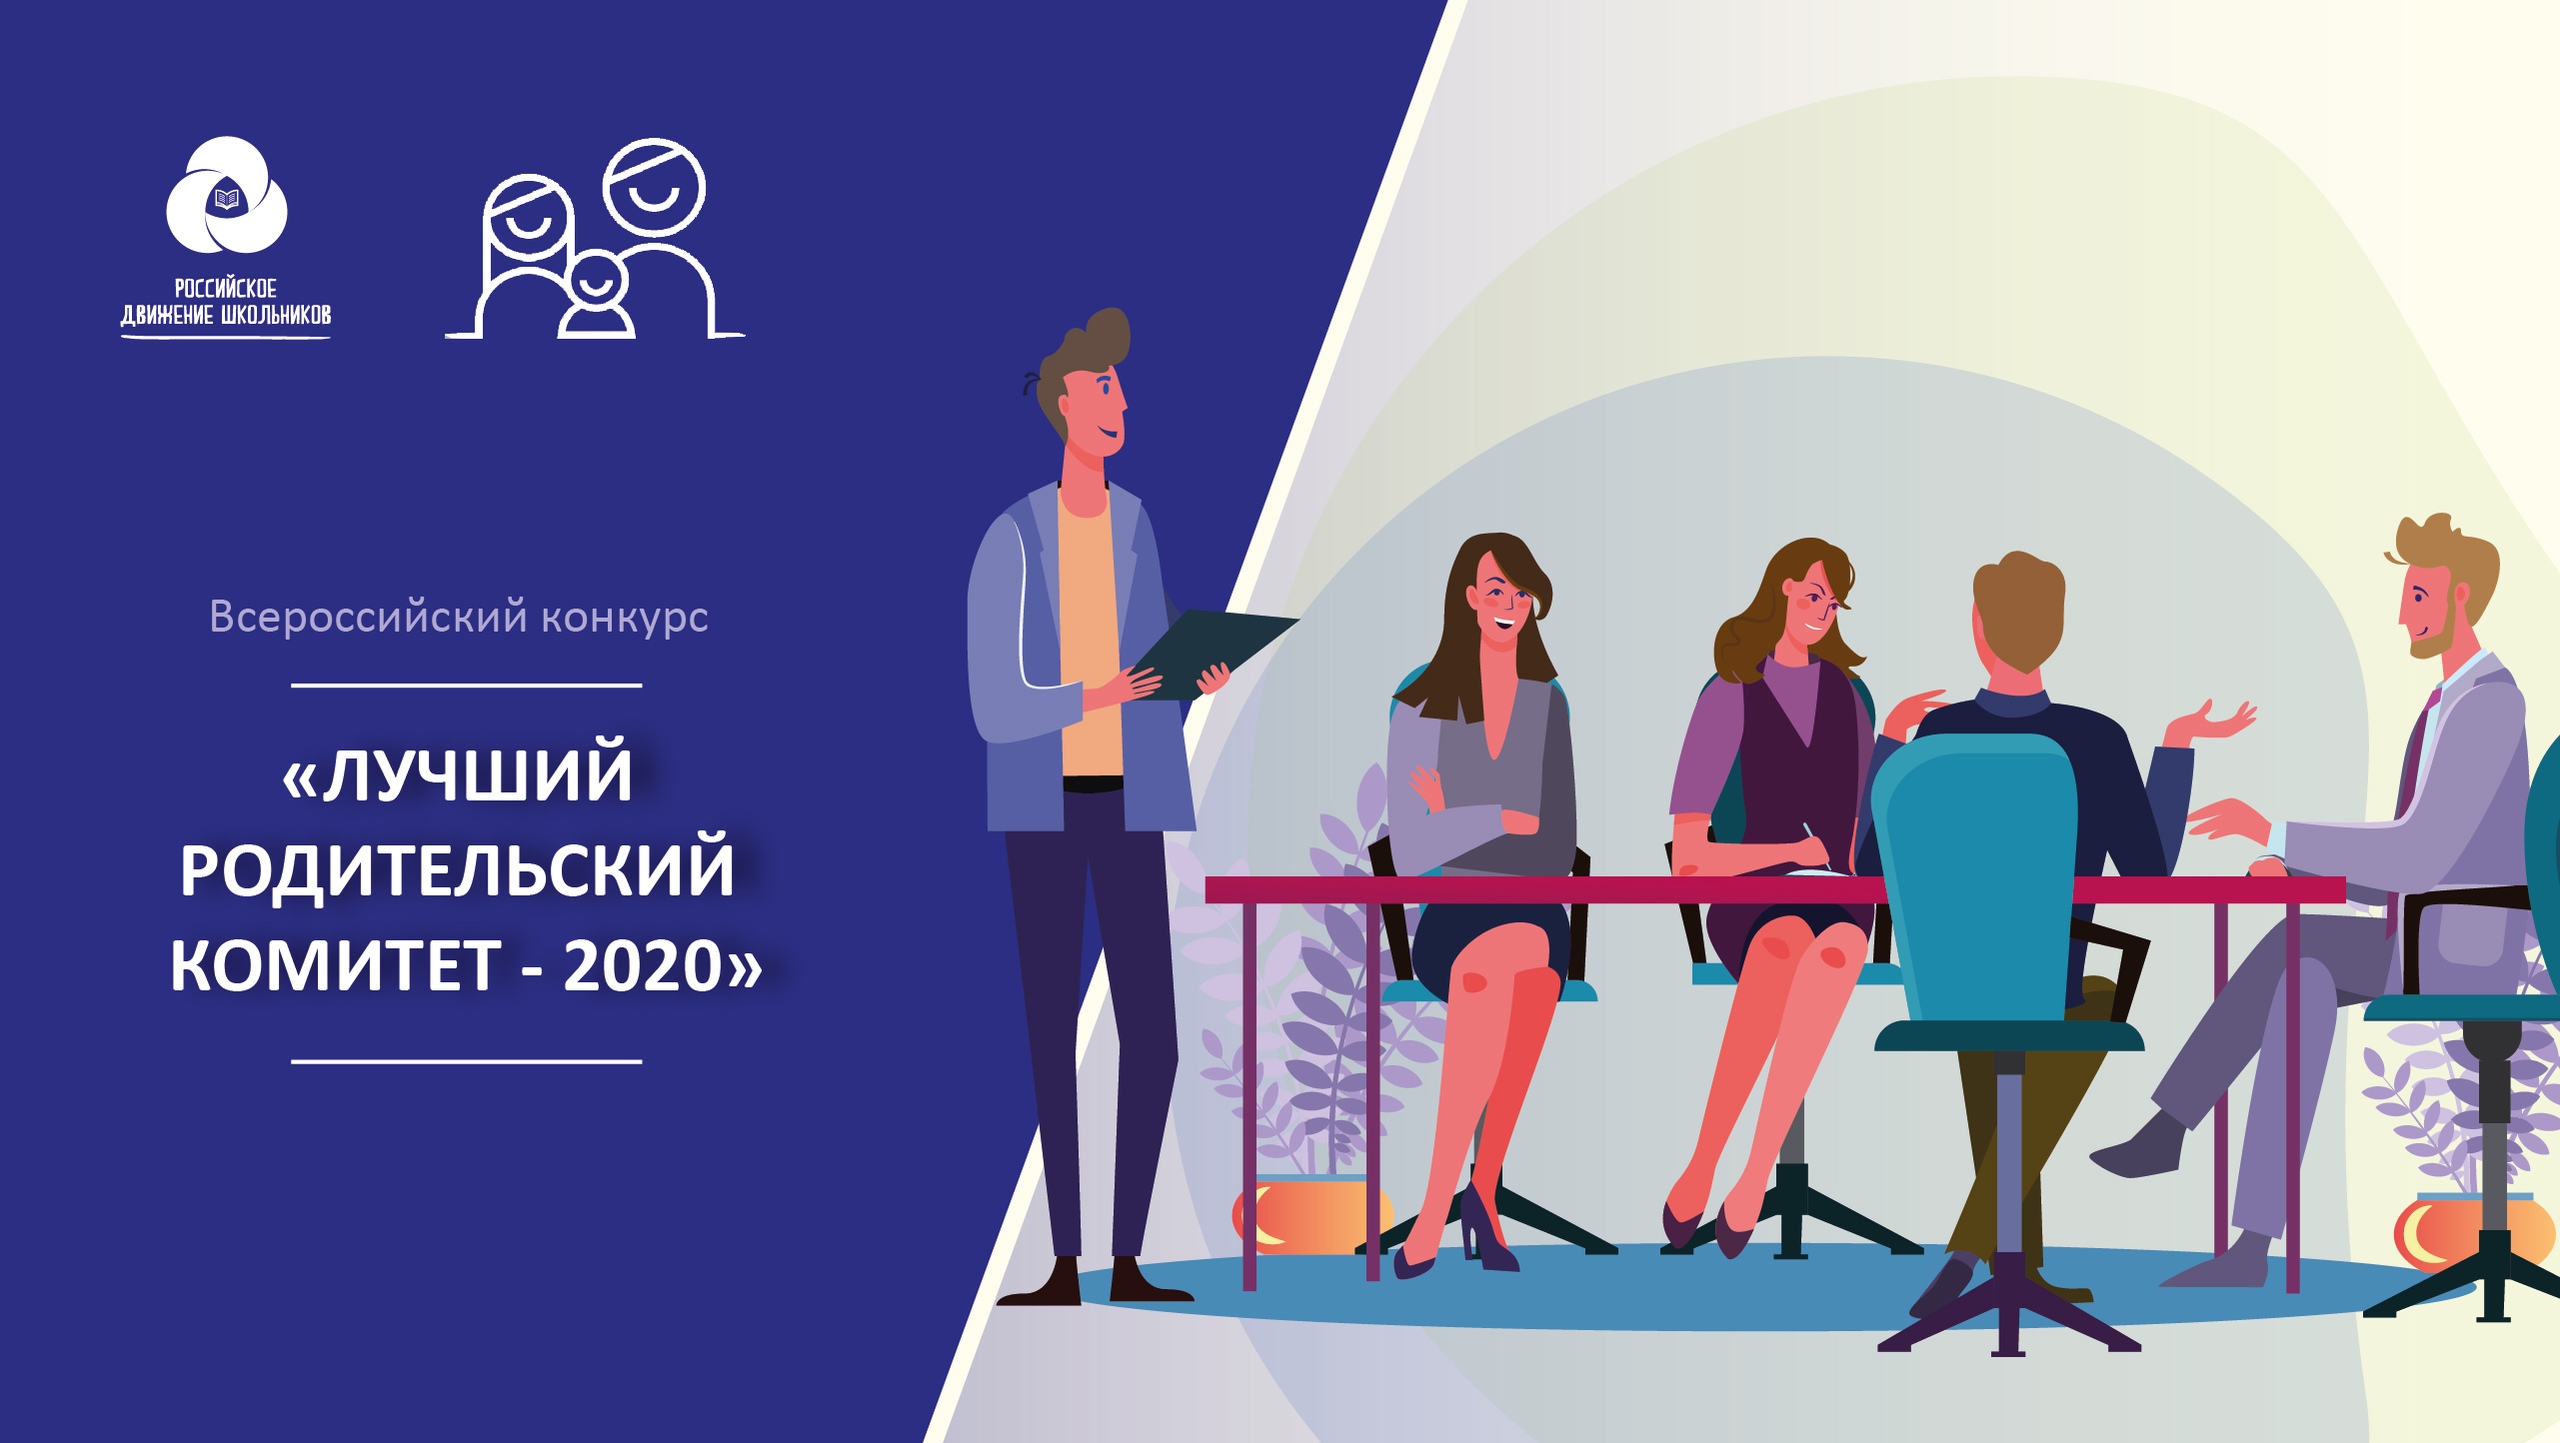 Всероссийский конкурс  родительских комитетов «Лучший родительский комитет 2020»